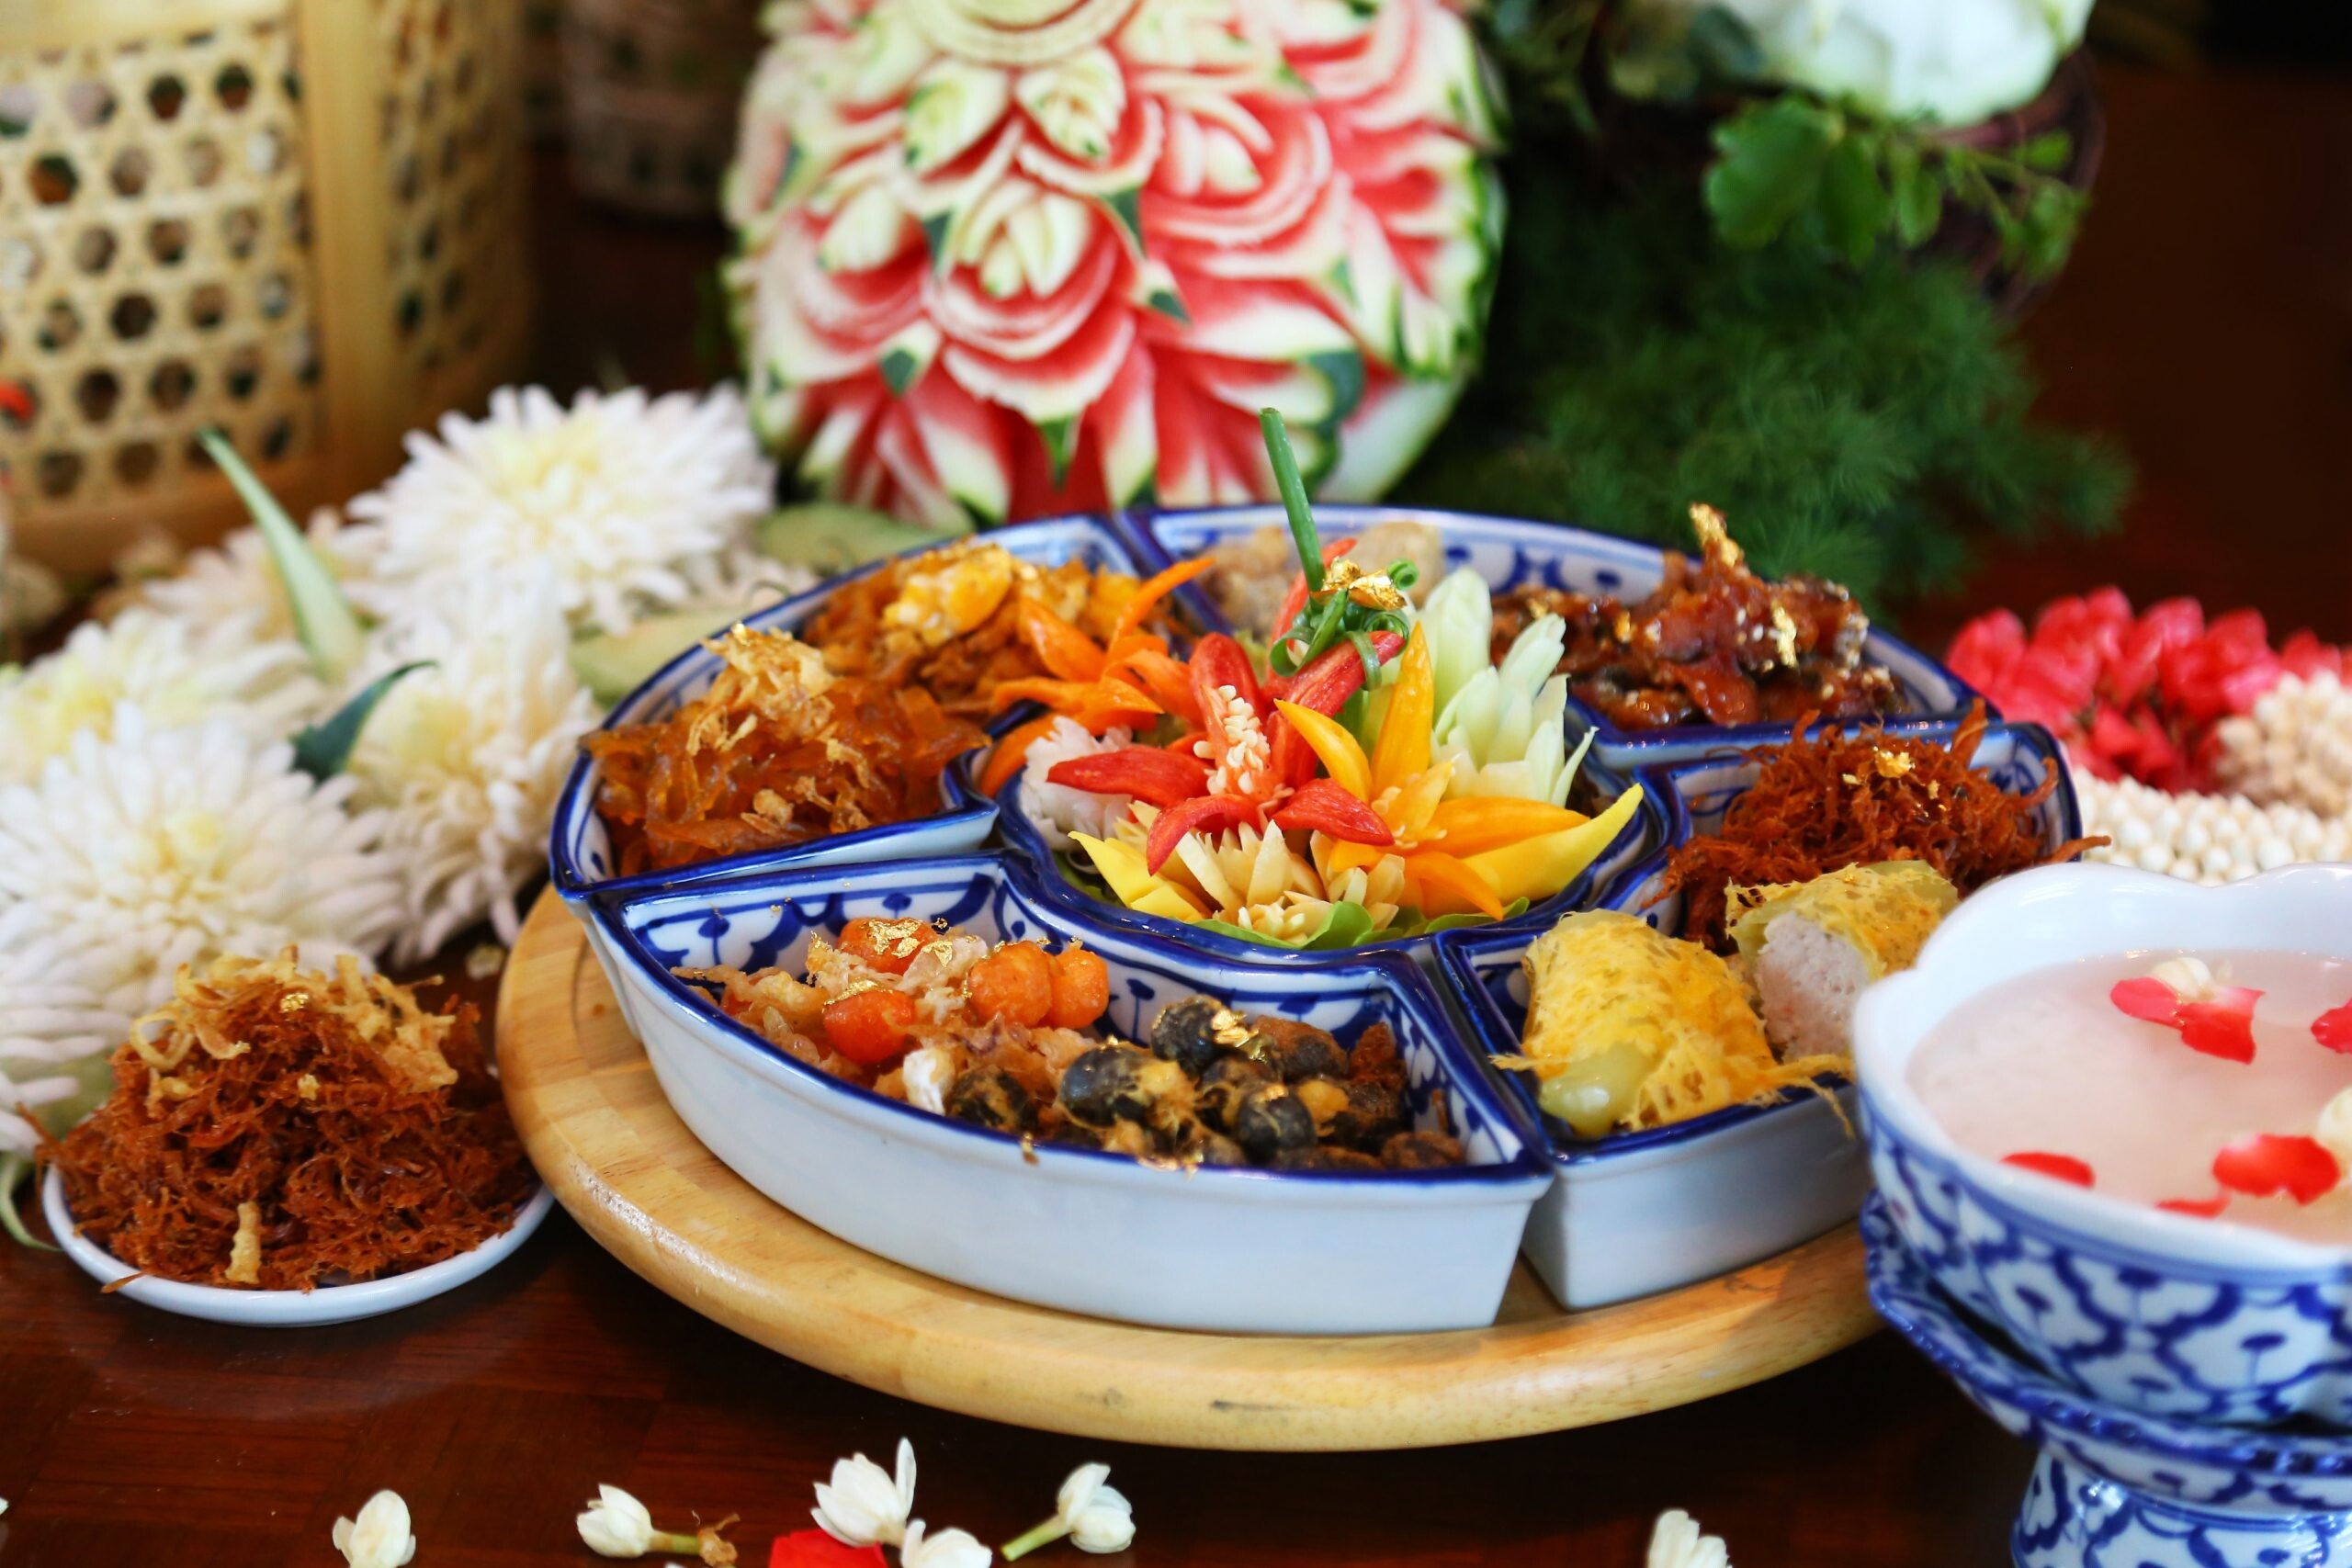 "ข้าวแช่สุวรรณภูมิ" สำรับเอกแห่งฤดูร้อน ที่ห้องอาหารศาลาไทย โรงแรมโนโวเทล สุวรรณภูมิ แอร์พอร์ต